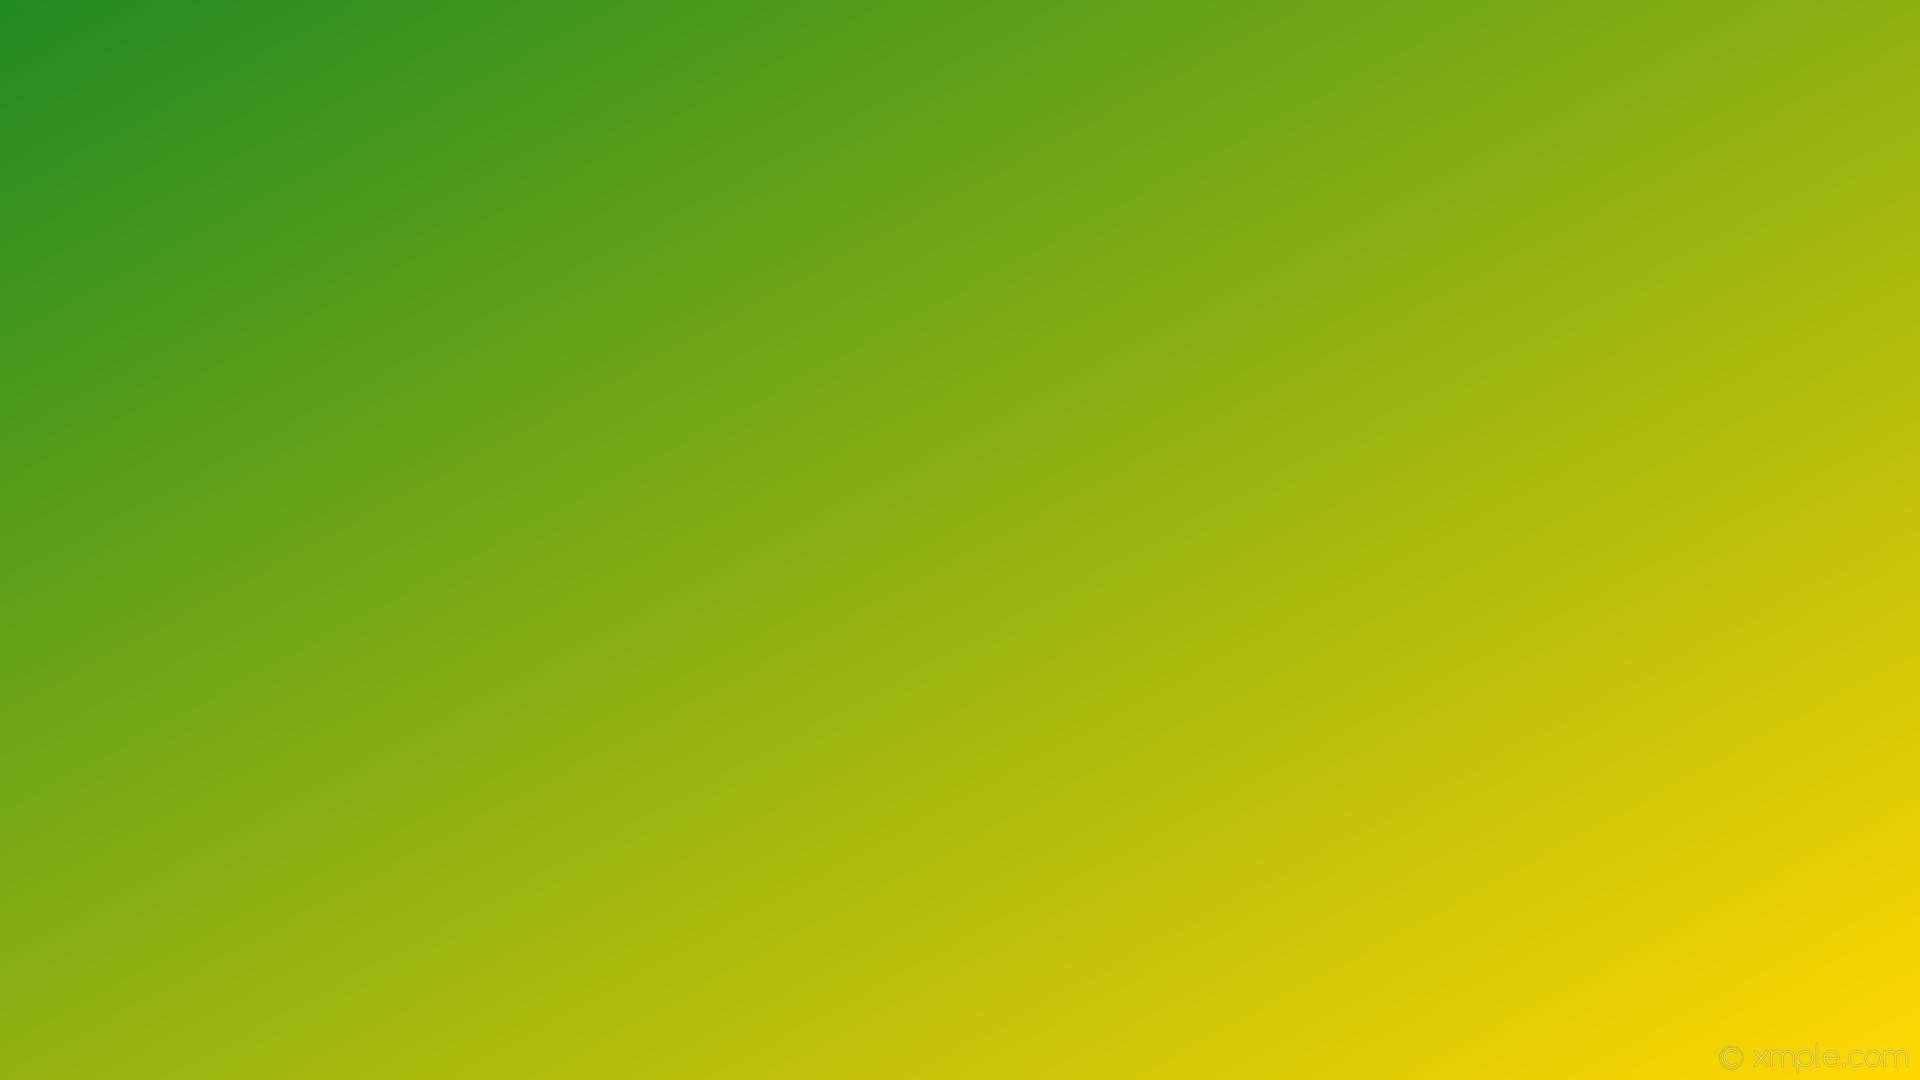 Wallpaper gradient green linear yellow forest green gold b22 #ffd700 150